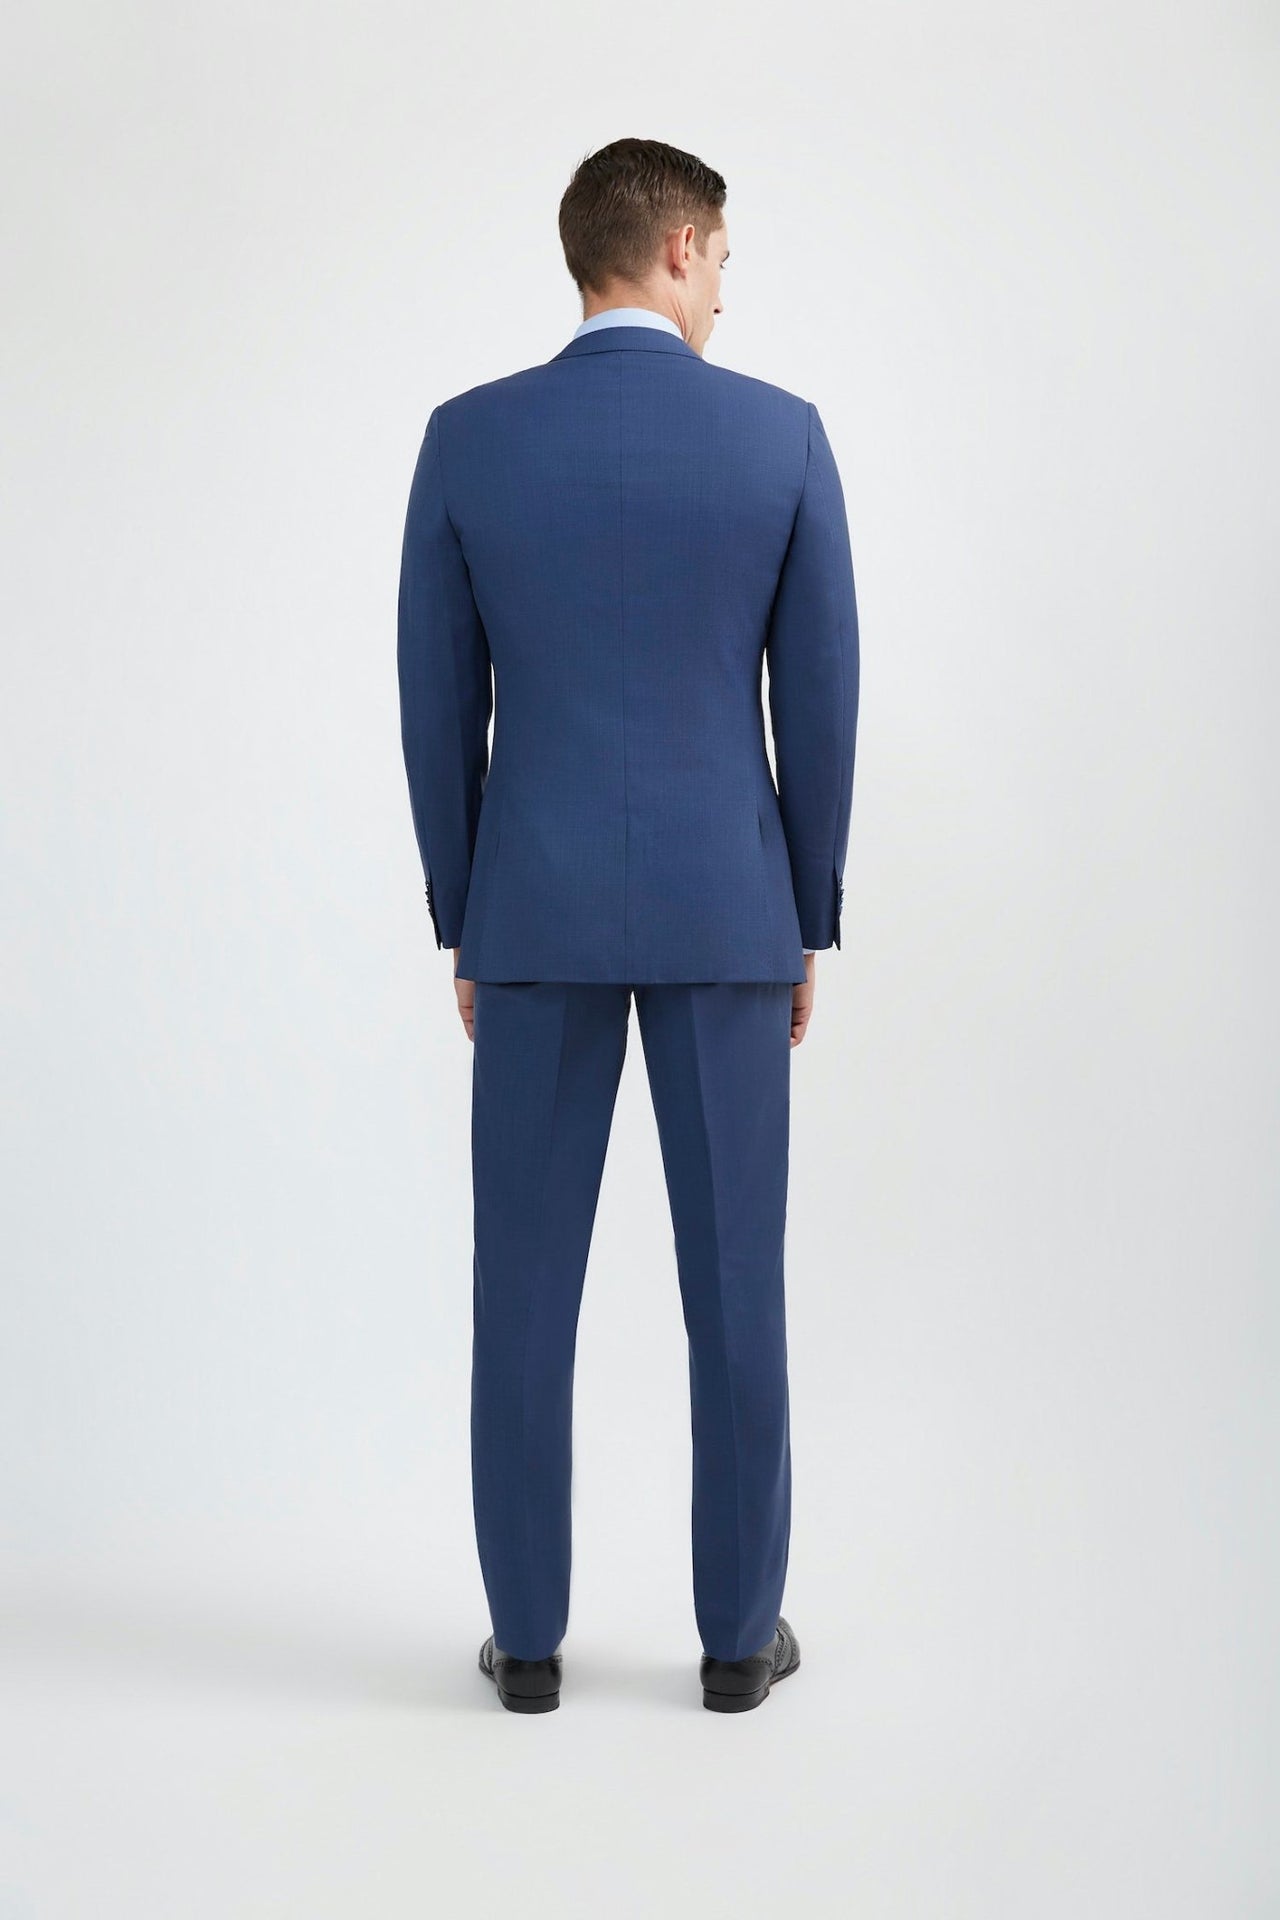 Italian Cut Men's Royal Blue Suit - Tomasso Black